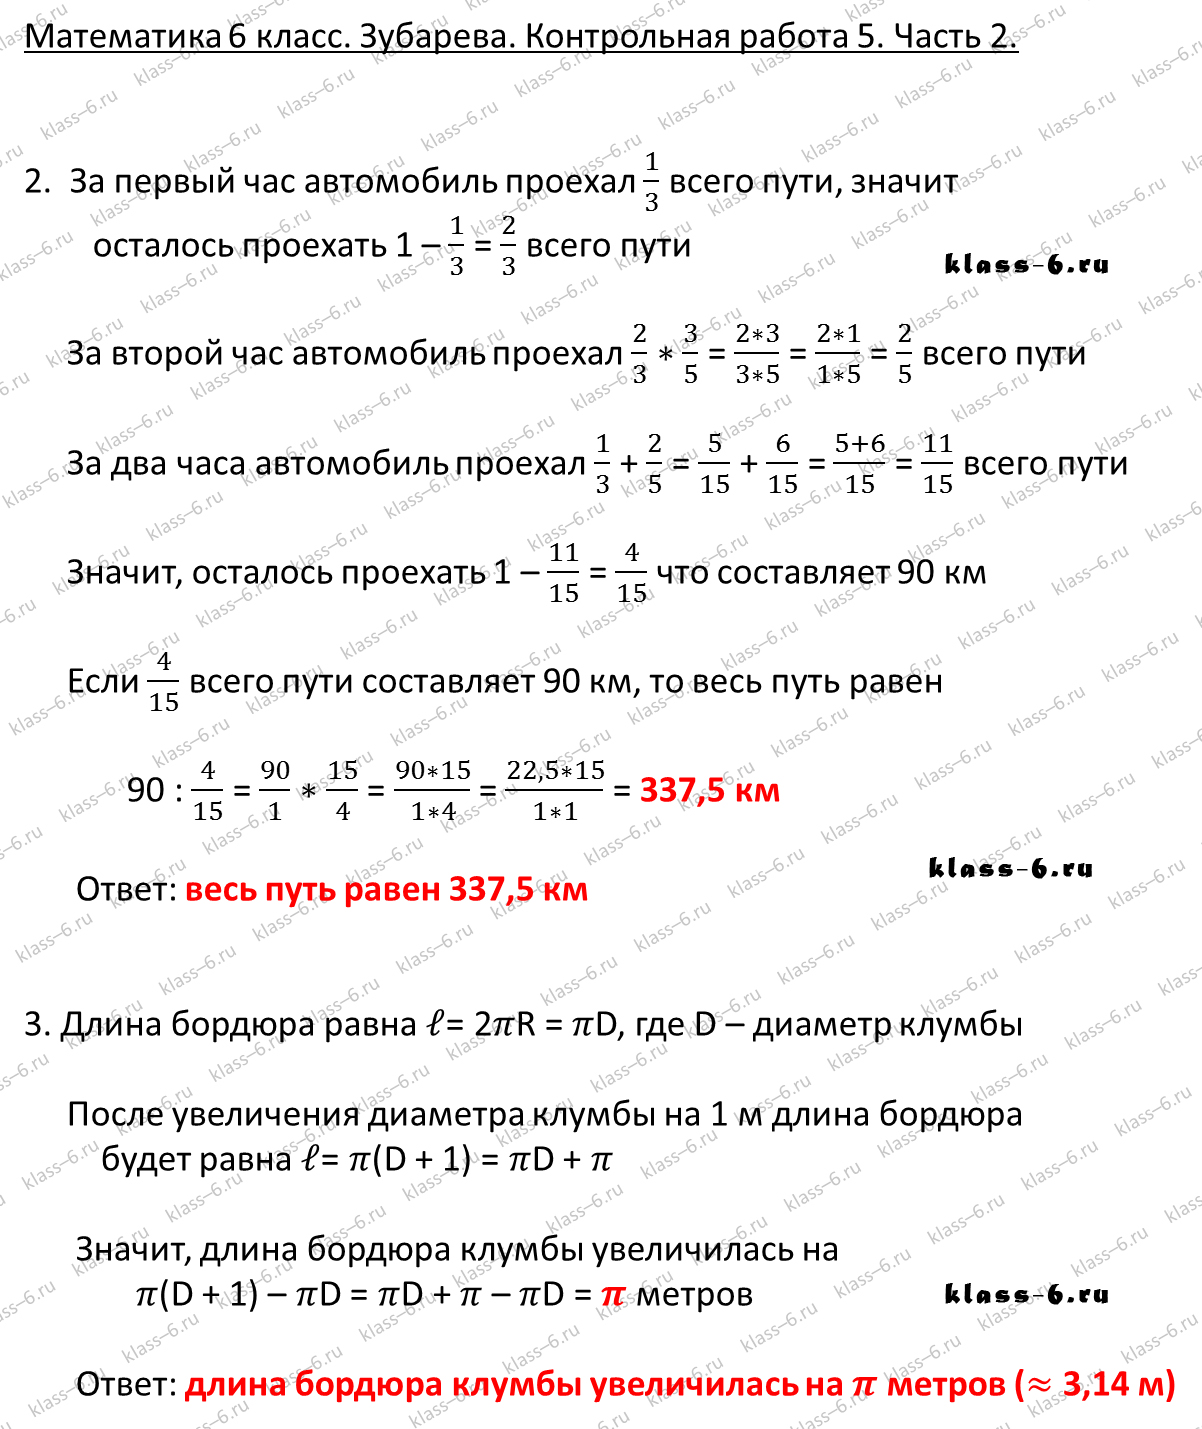 гдз математика Зубарева 6 класс ответ и подробное решение с объяснениями контрольной работы № 5 (2)